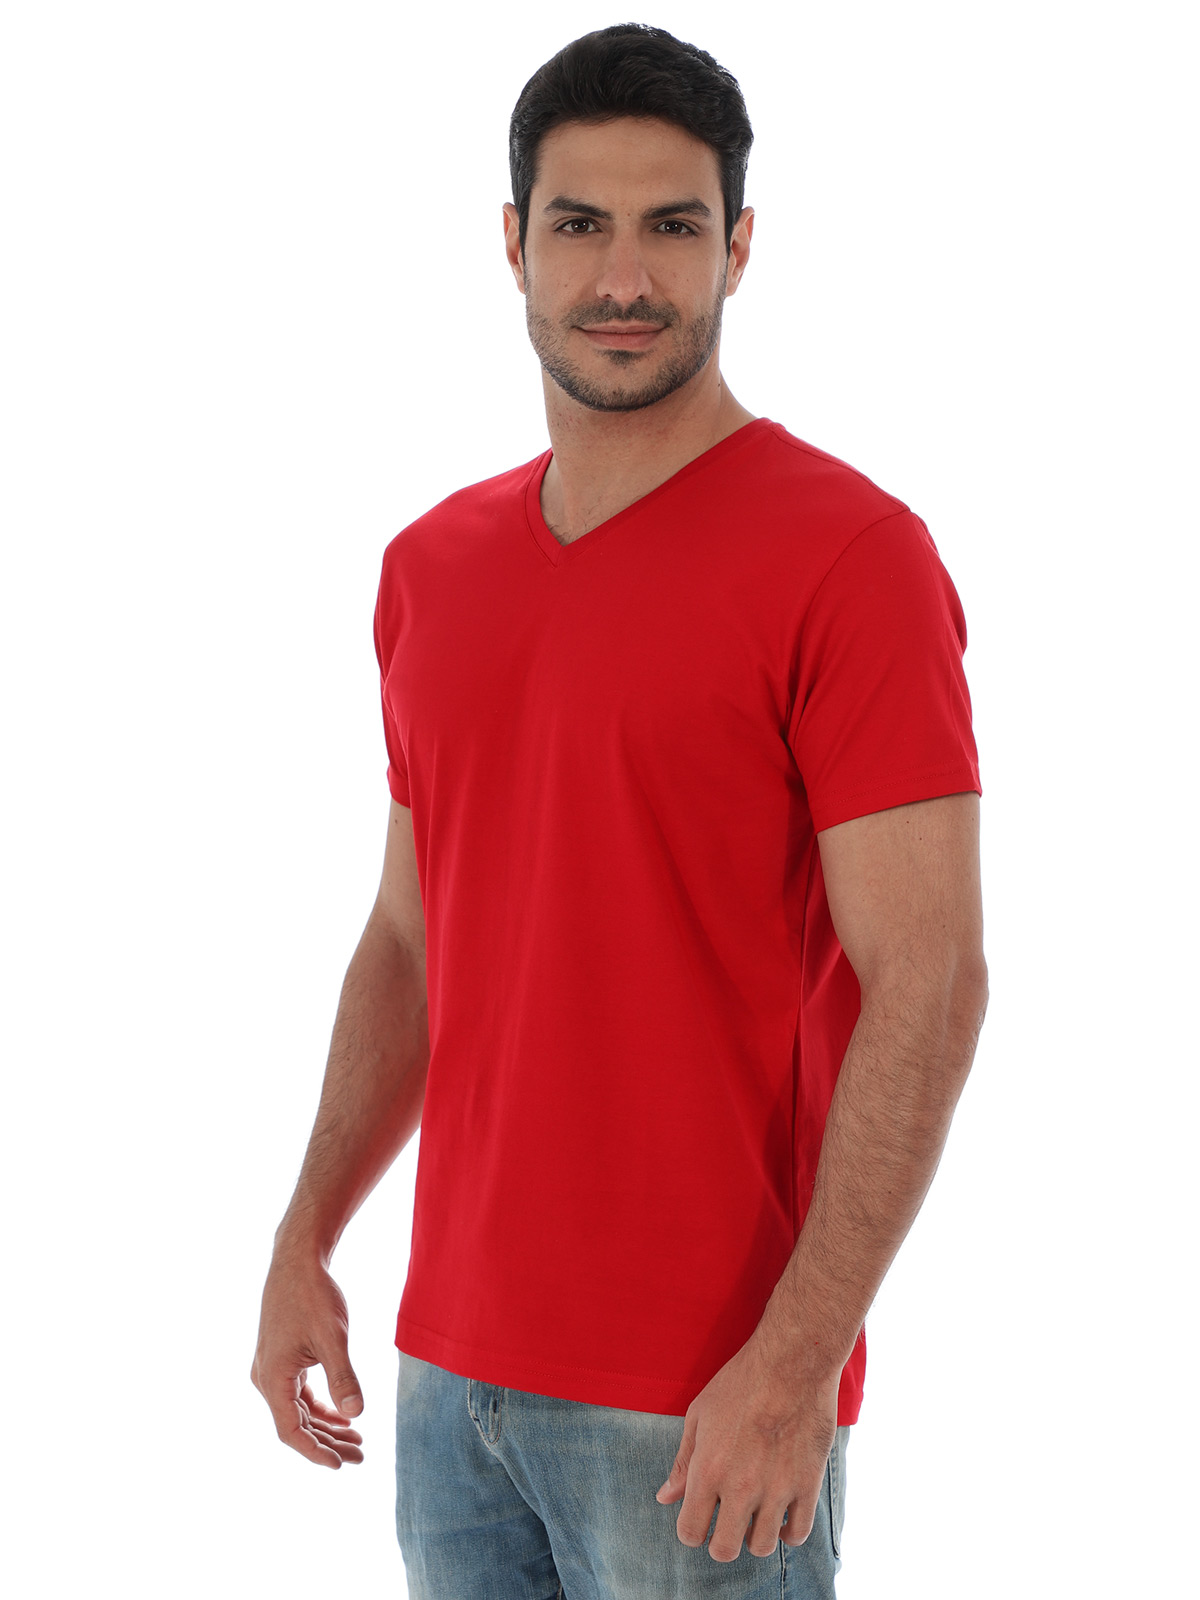 Camiseta Masculina Decote V. Algodão Slim Fit Vermelha